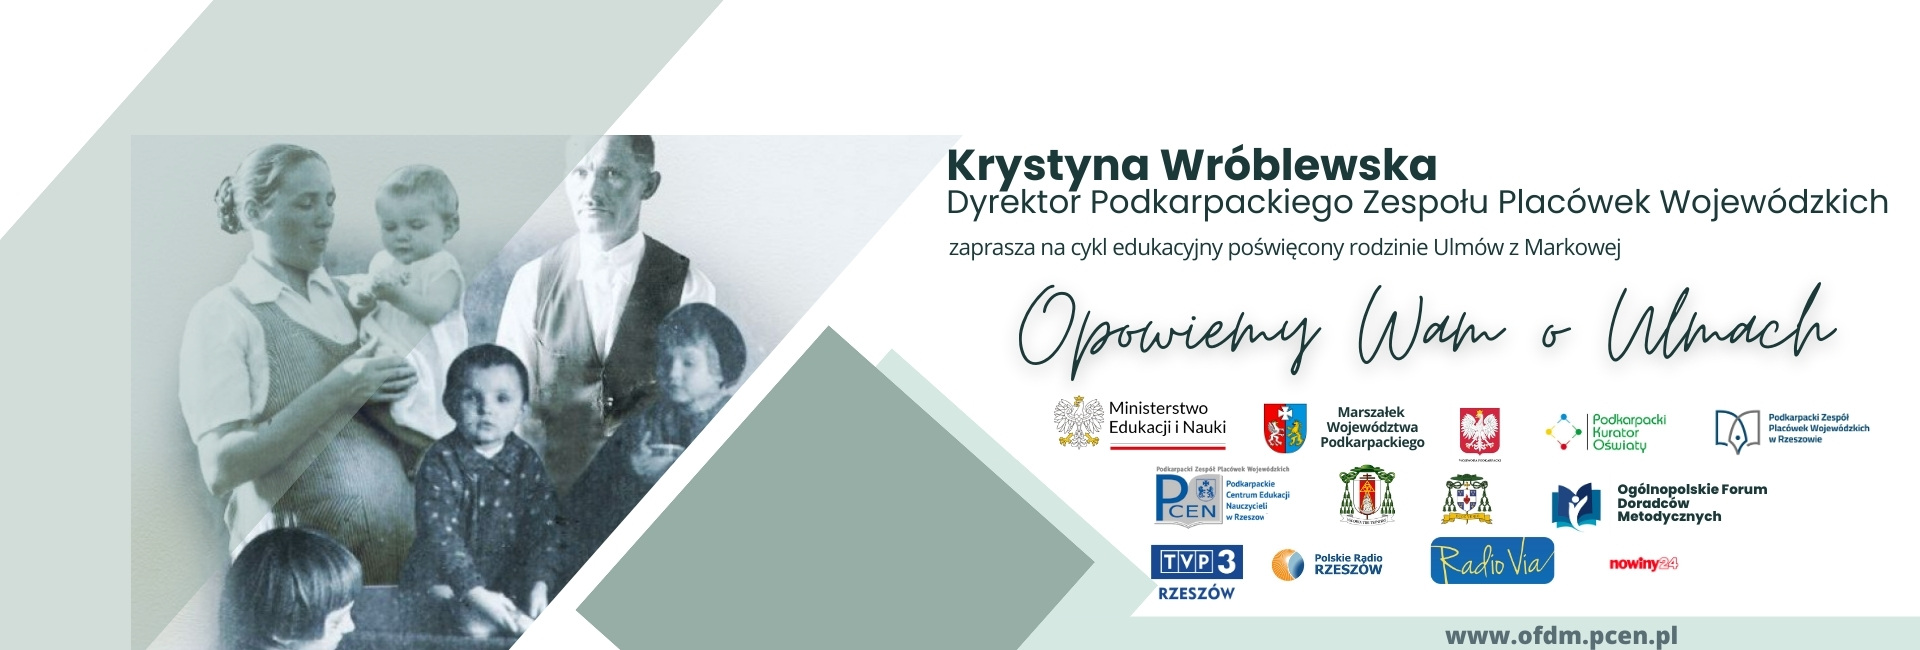 Krystyna Wróblewska Dyrektor PZPW w Rzeszowie zaprasza na cykl edukacyjny poświęcony rodzinie Ulmów z Markowej Opowiemy Wam o Ulmach